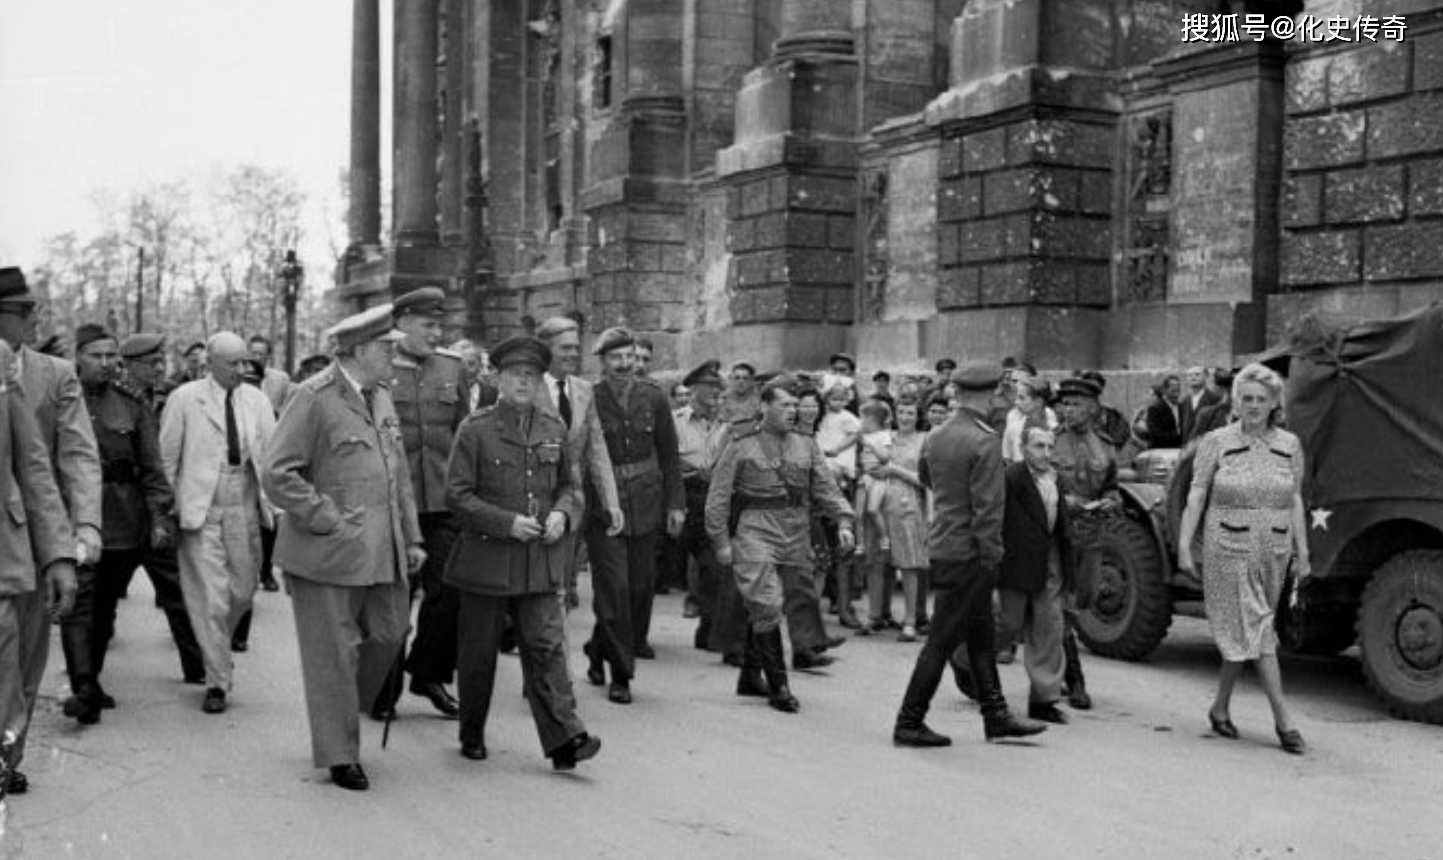 1945年,德国无条件投降,丘吉尔摆出胜利手势